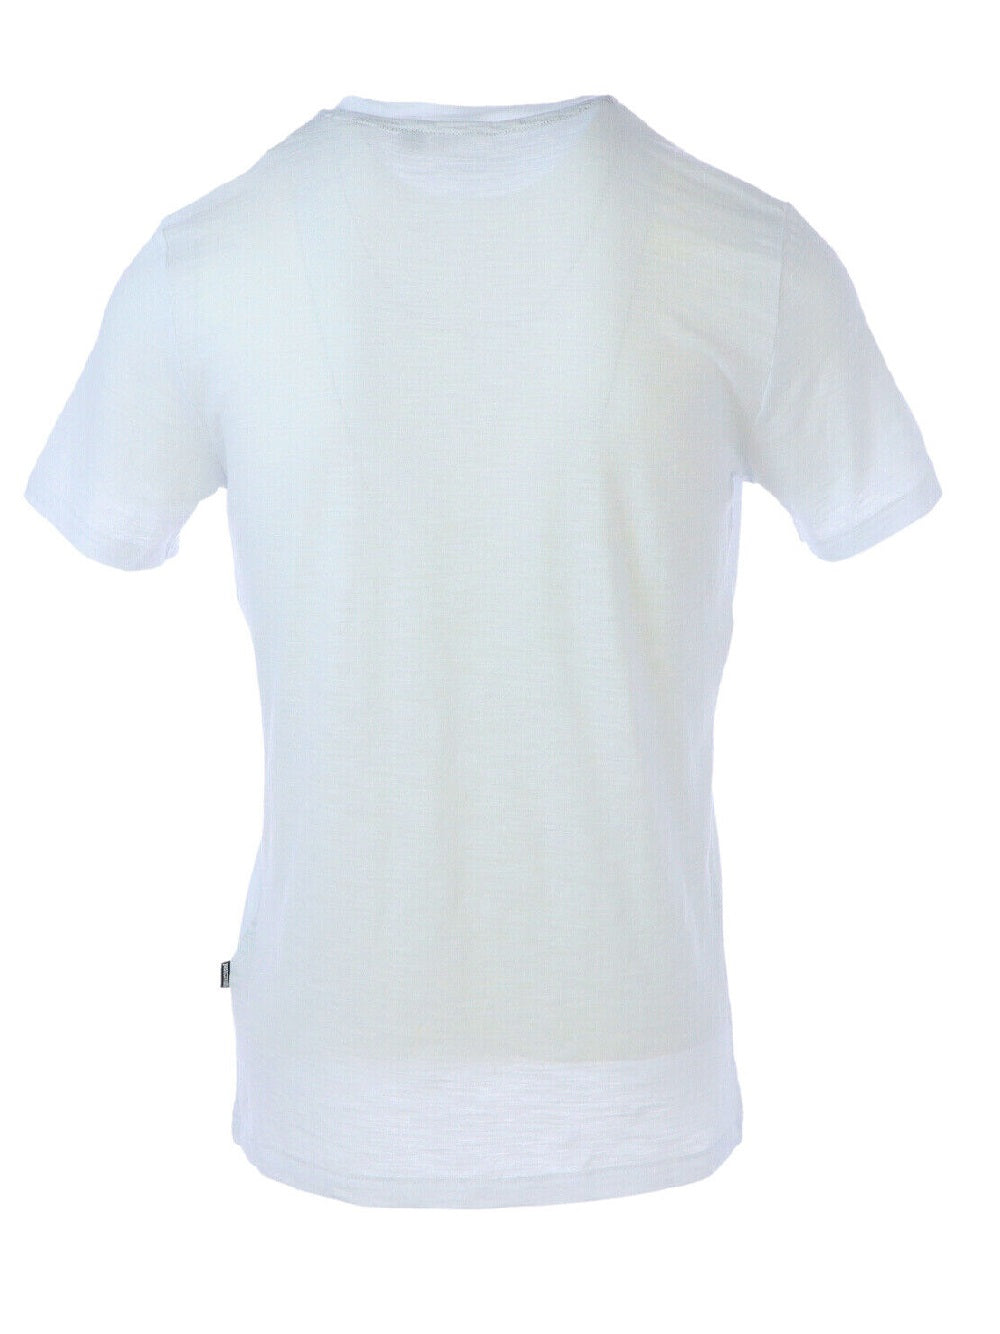 T-shirt Just Cavalli S03GC0397 in cotone con stampa del logo